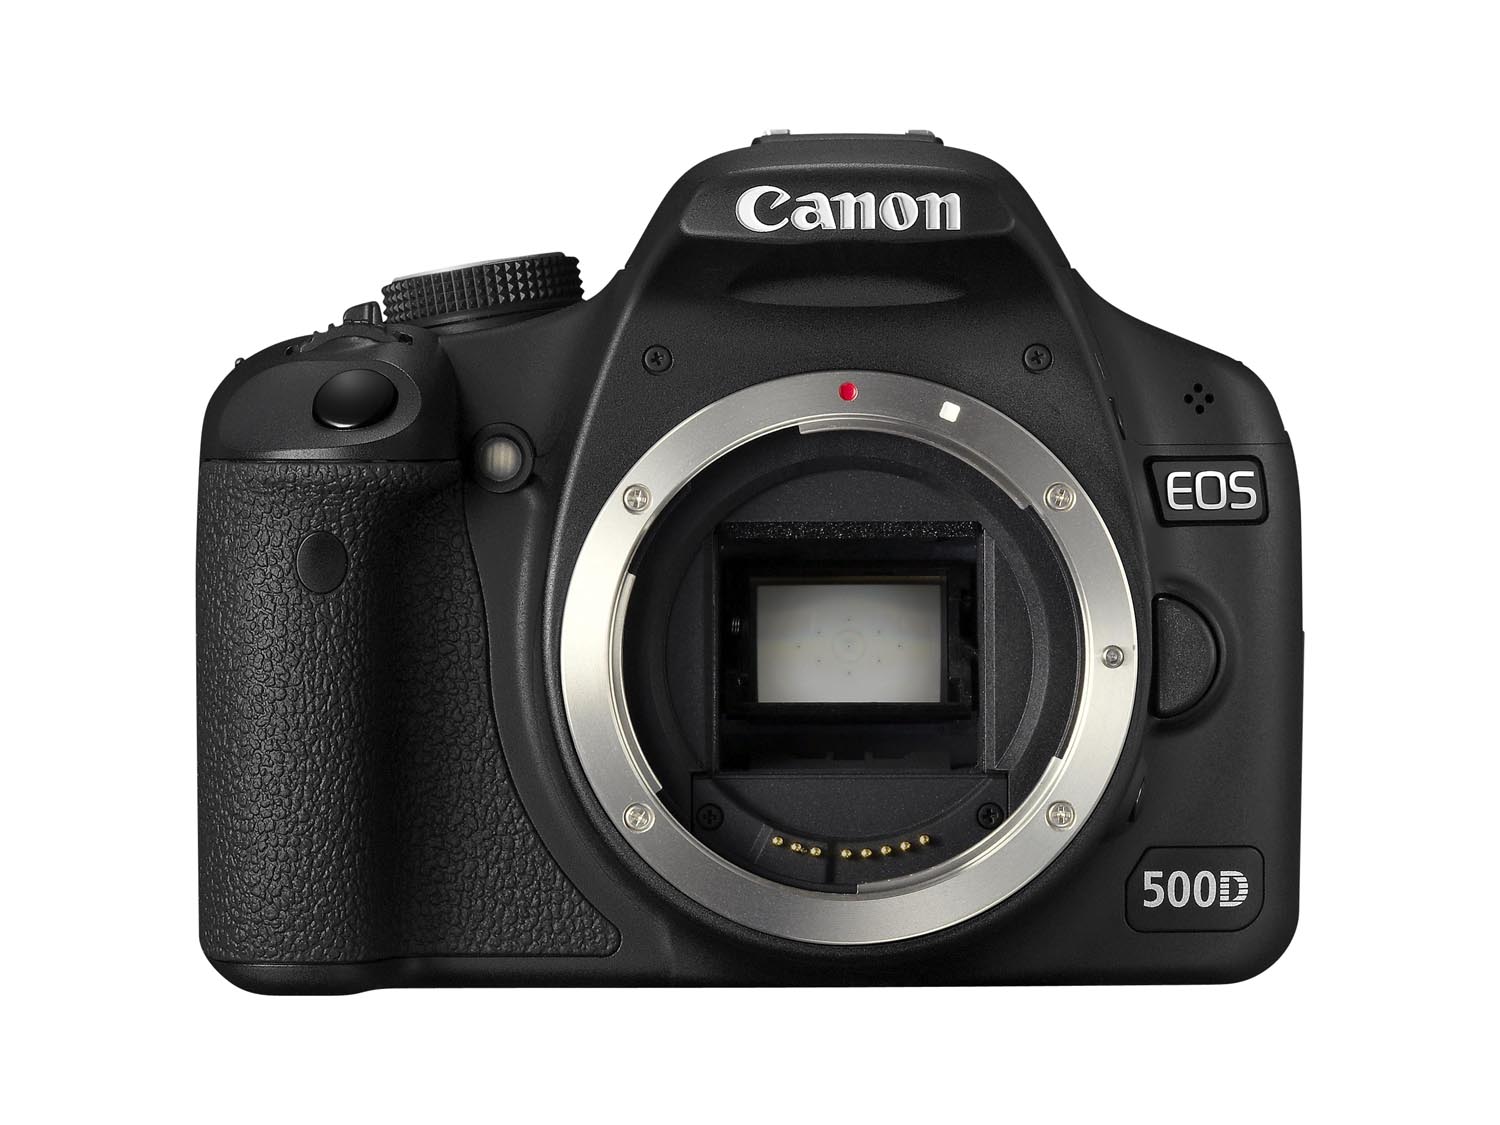 Canon 500D (Body only) | Canon 500D cũ | Canon 500D cu | Máy ảnh canon 500D cũ | canon eos 500D cũ | 500D canon | canon 500D cũ giá rẻ nhất